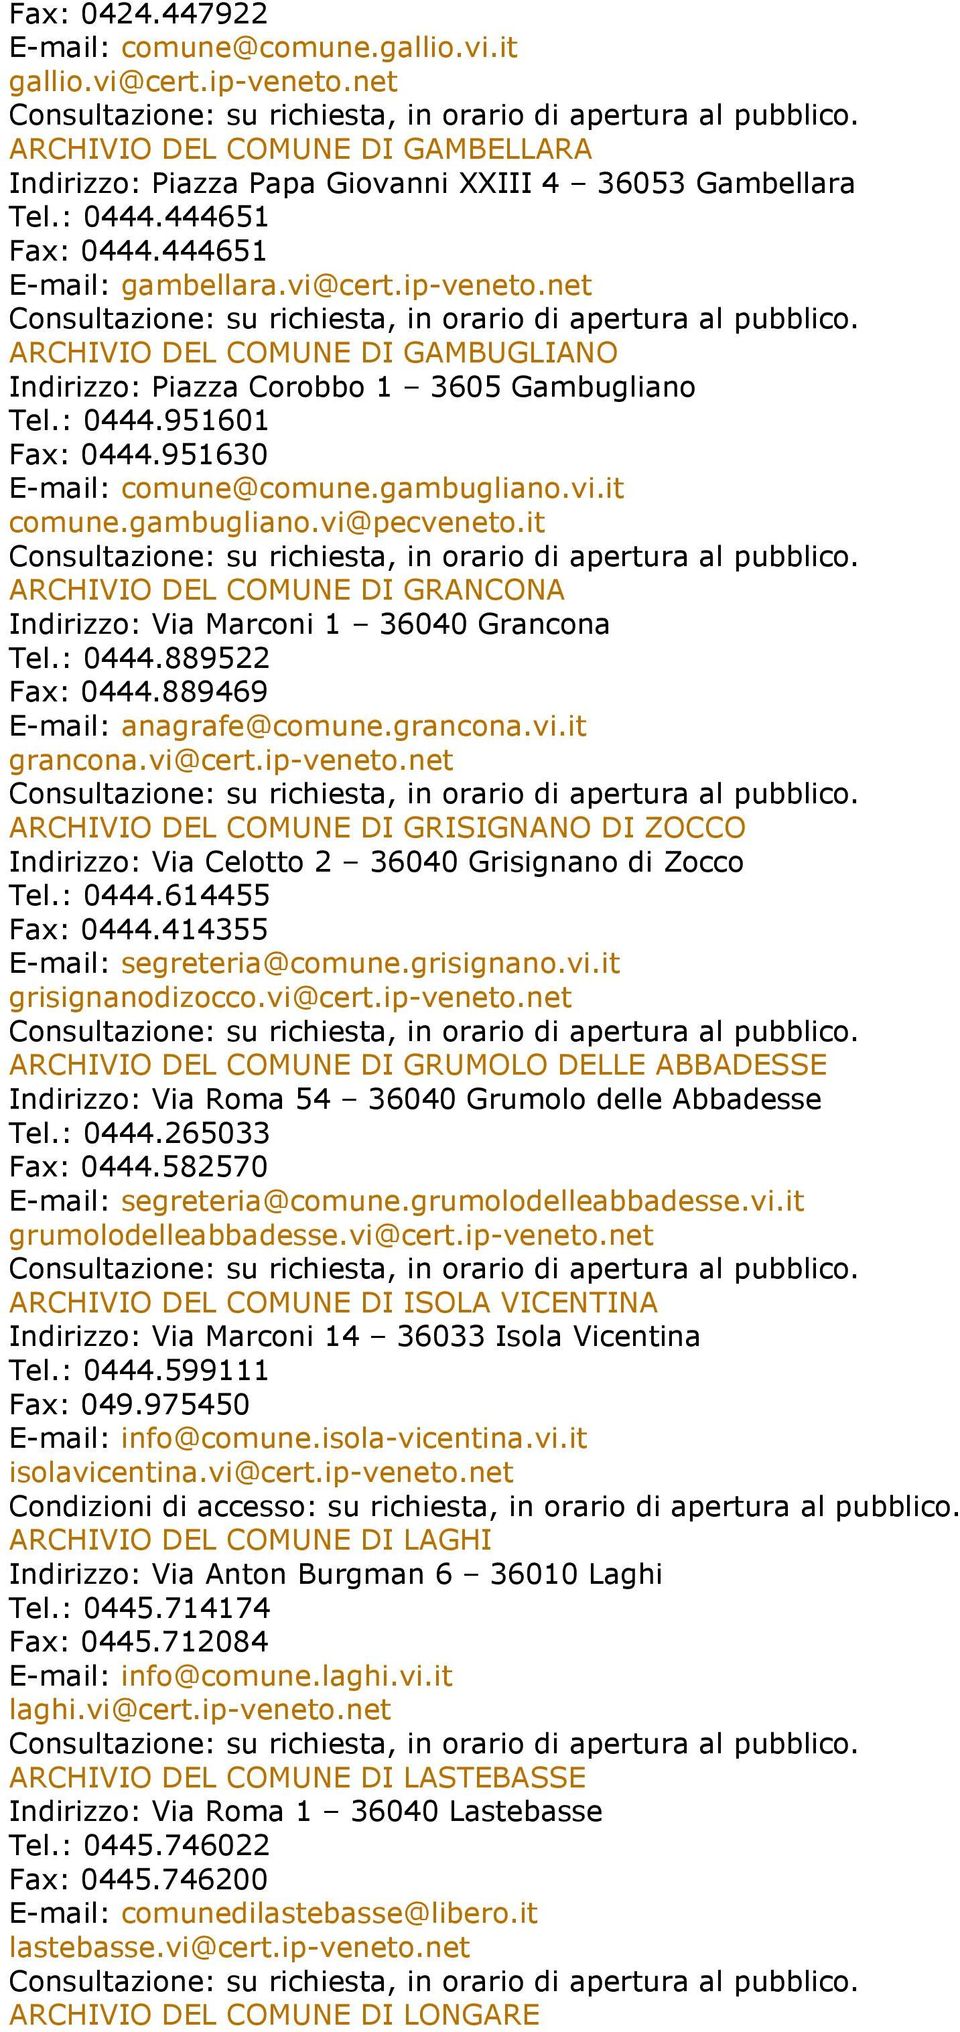 gambugliano.vi@pecveneto.it ARCHIVIO DEL COMUNE DI GRANCONA Indirizzo: Via Marconi 1 36040 Grancona Tel.: 0444.889522 Fax: 0444.889469 E-mail: anagrafe@comune.grancona.vi.it grancona.vi@cert.